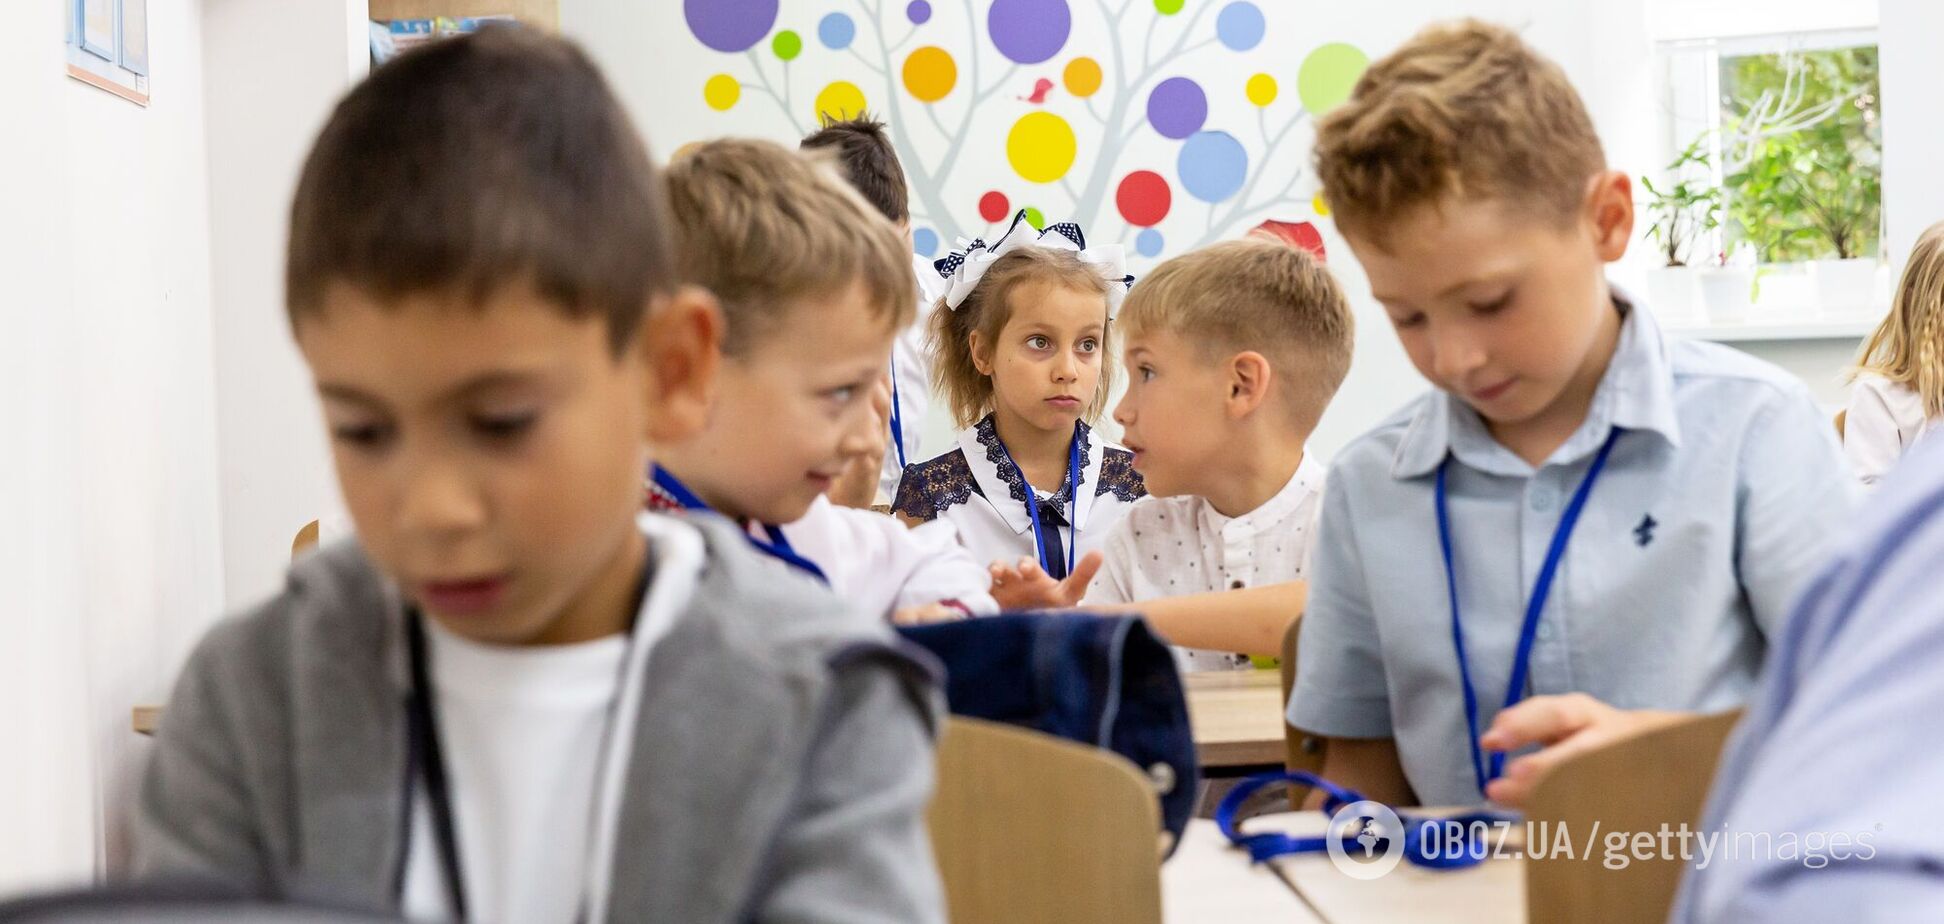 НУШ нужно реанимировать: педагог рассказал, почему “пробуксовывает” реформа среднего образования в Украине